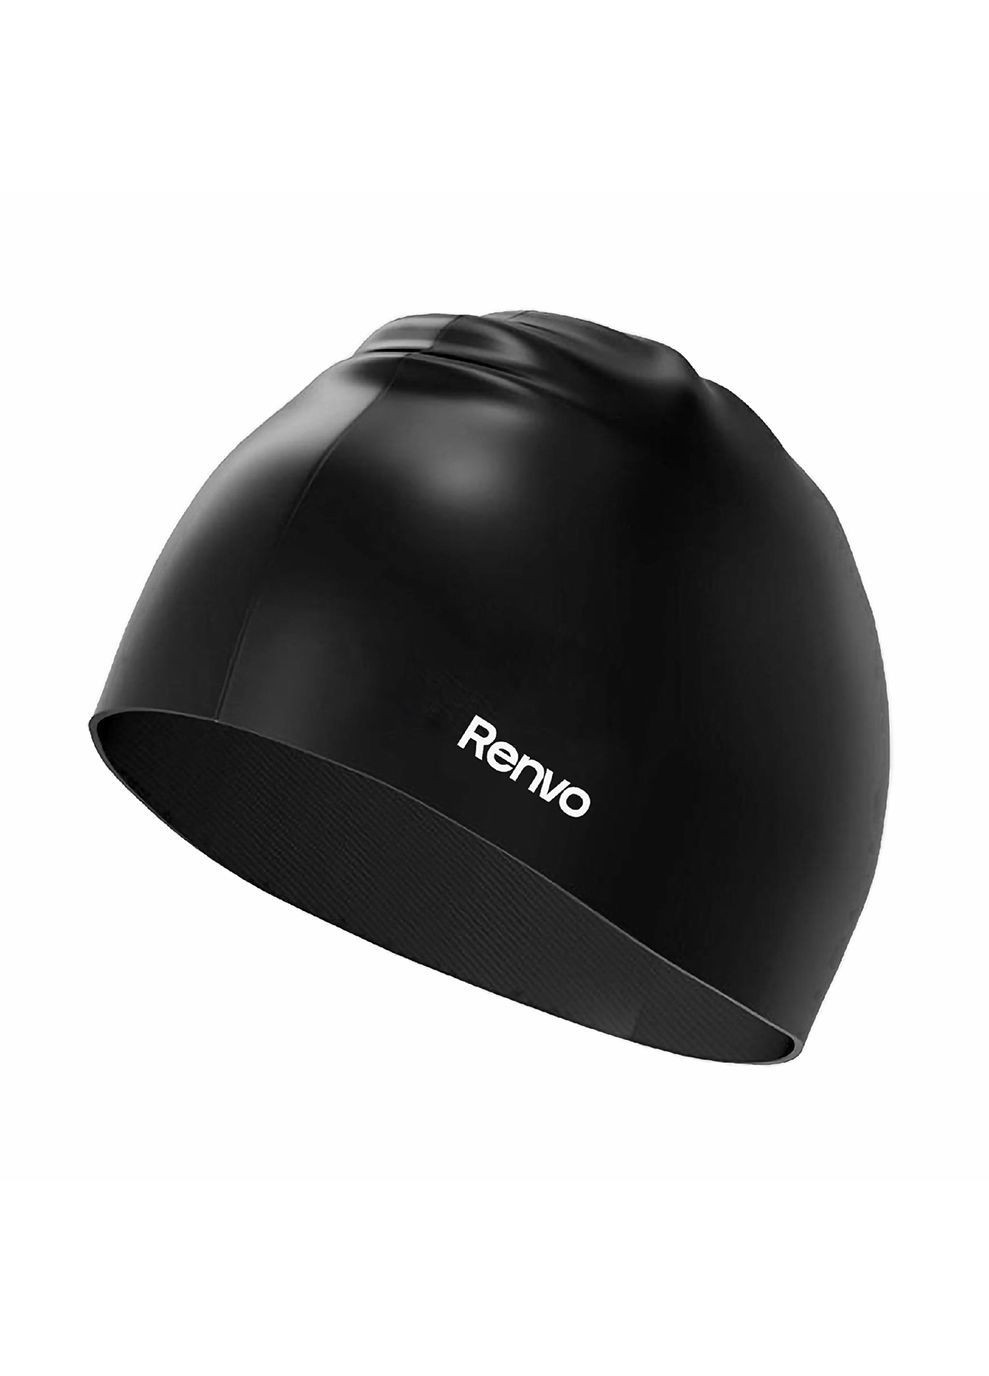 Взрослая шапочка для плавания Keles черный Уни OSFM (2SC100-01) Renvo (282617430)